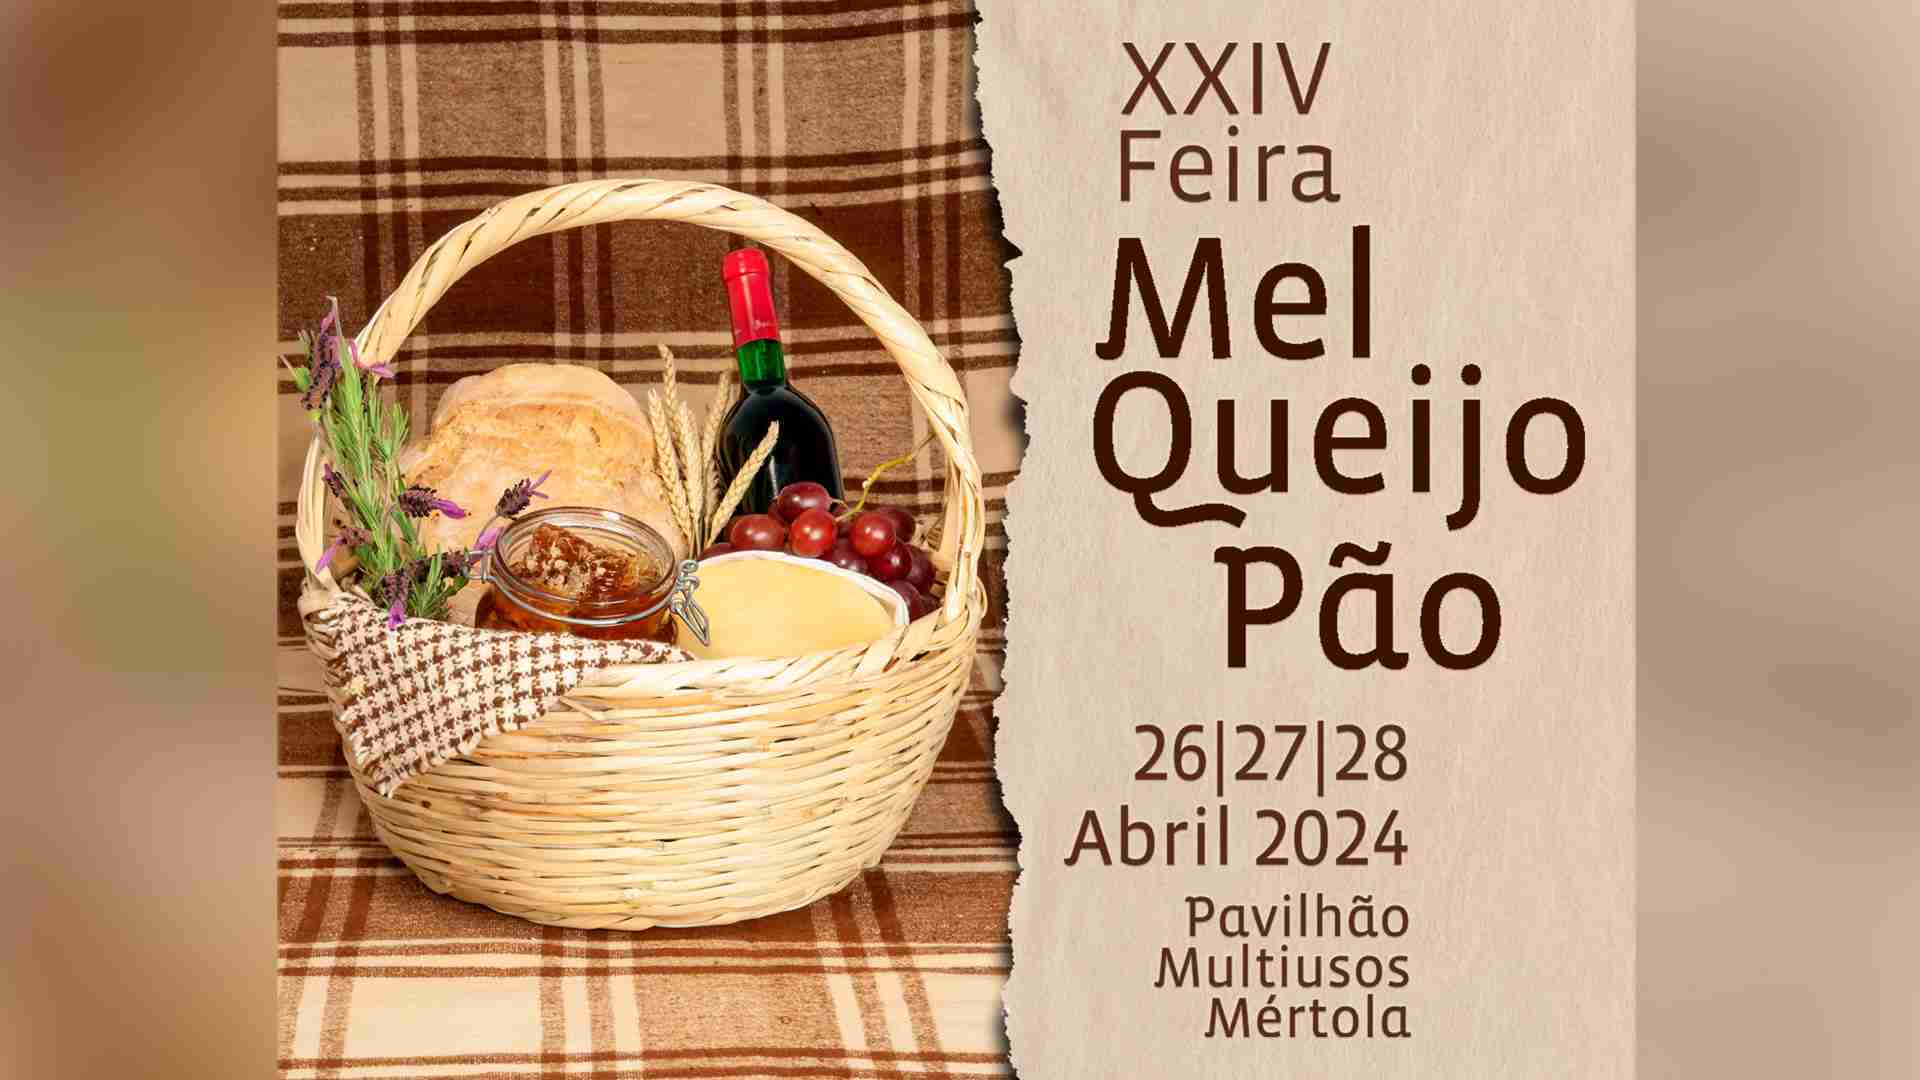 Mértola prepara mais uma edição da Feira do Mel, Queijo e Pão